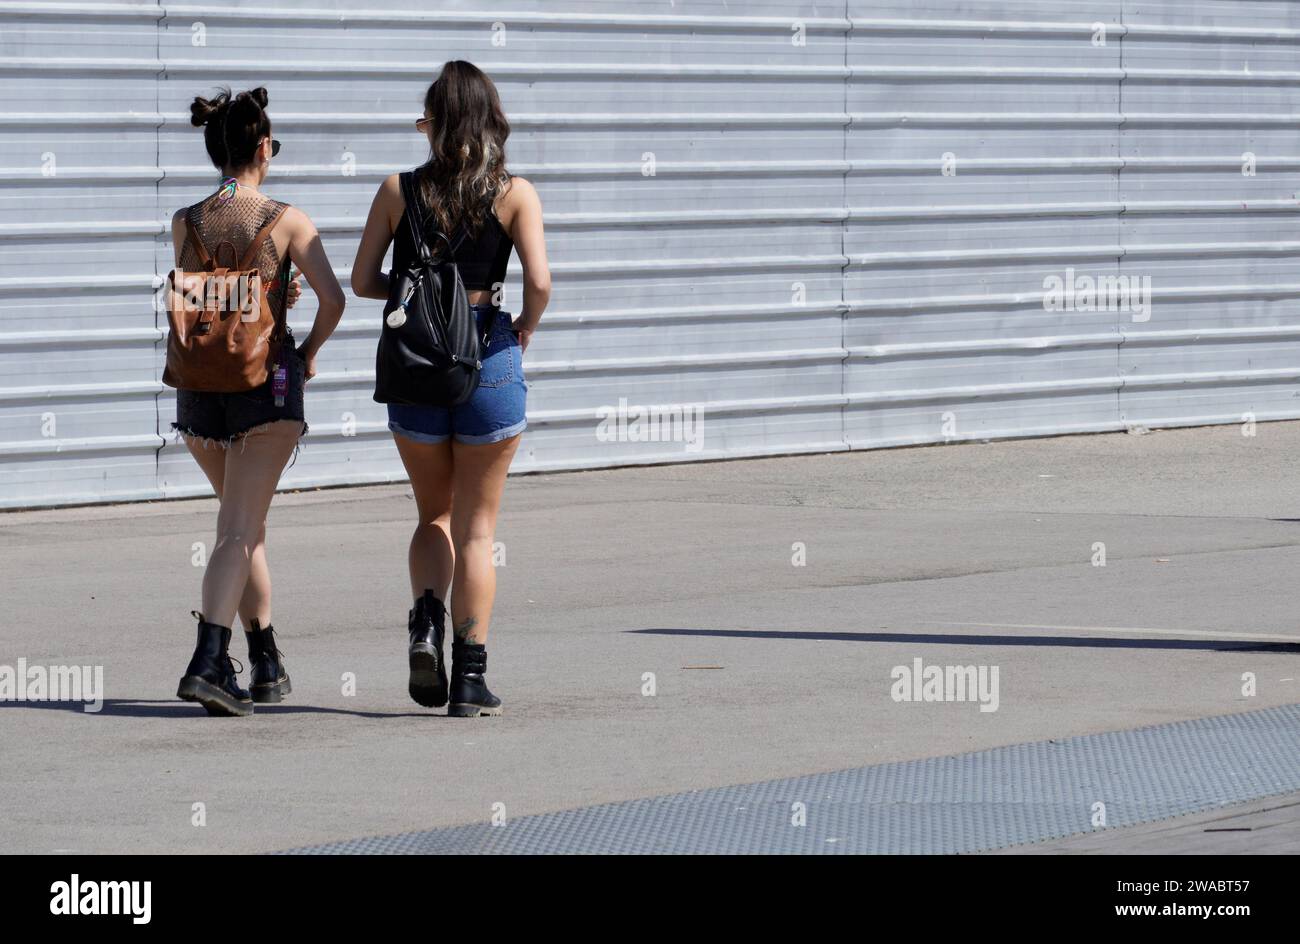 Barcellona, Spagna - 26 maggio 2022: Due ragazze alla moda camminano nella zona di costruzione vestite di pantaloncini jean e stivali militari, entrambe portanti di pantaloncini Foto Stock